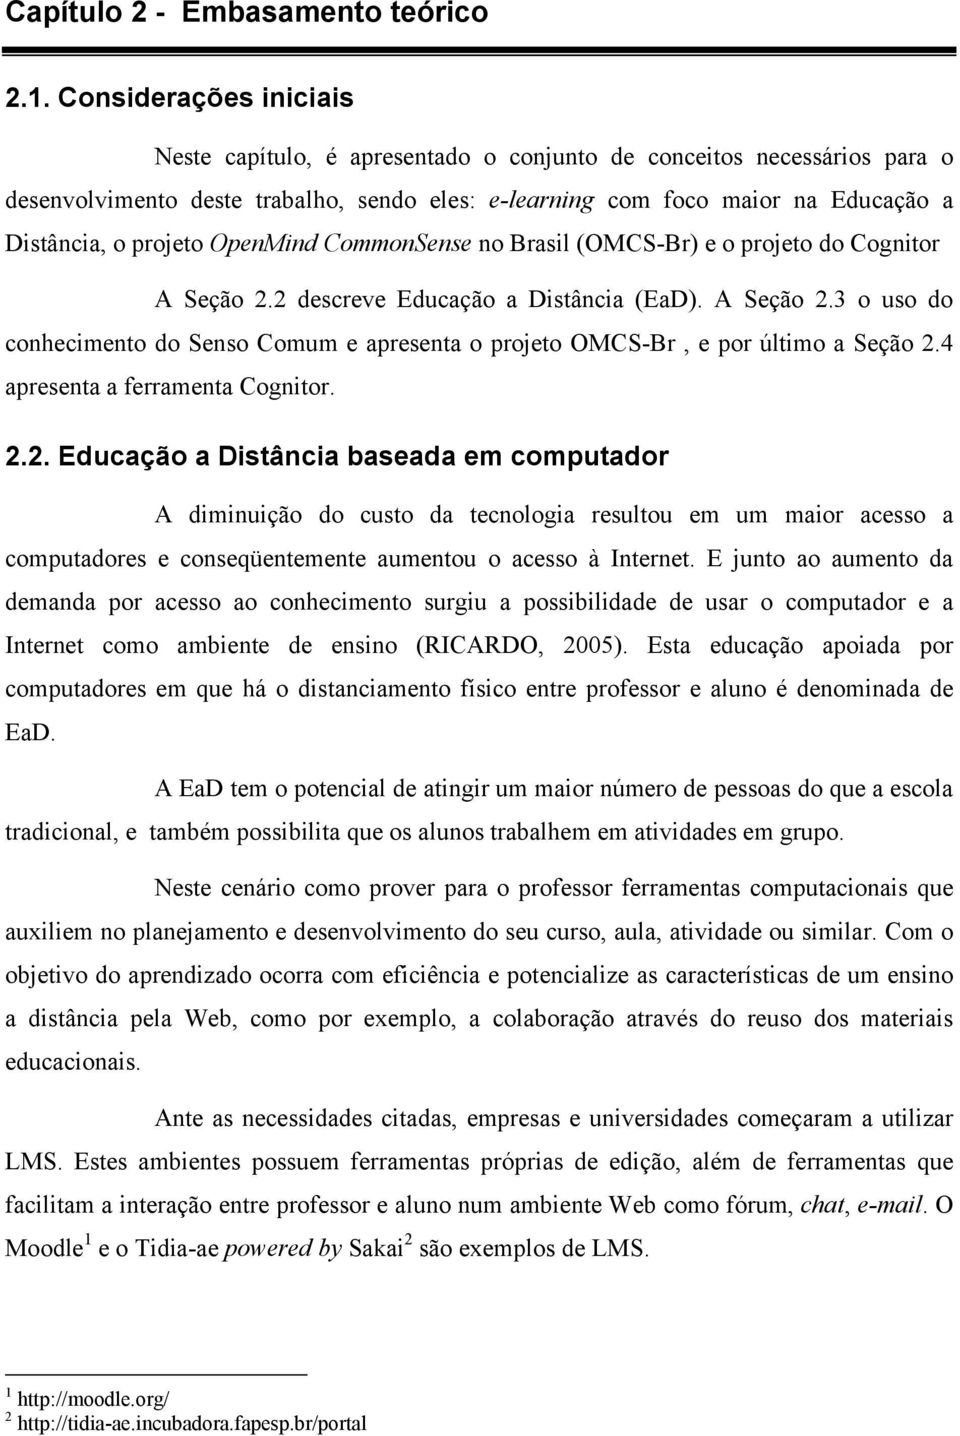 projeto OpenMind CommonSense no Brasil (OMCS-Br) e o projeto do Cognitor A Seção 2.2 descreve Educação a Distância (EaD). A Seção 2.3 o uso do conhecimento do Senso Comum e apresenta o projeto OMCS-Br, e por último a Seção 2.